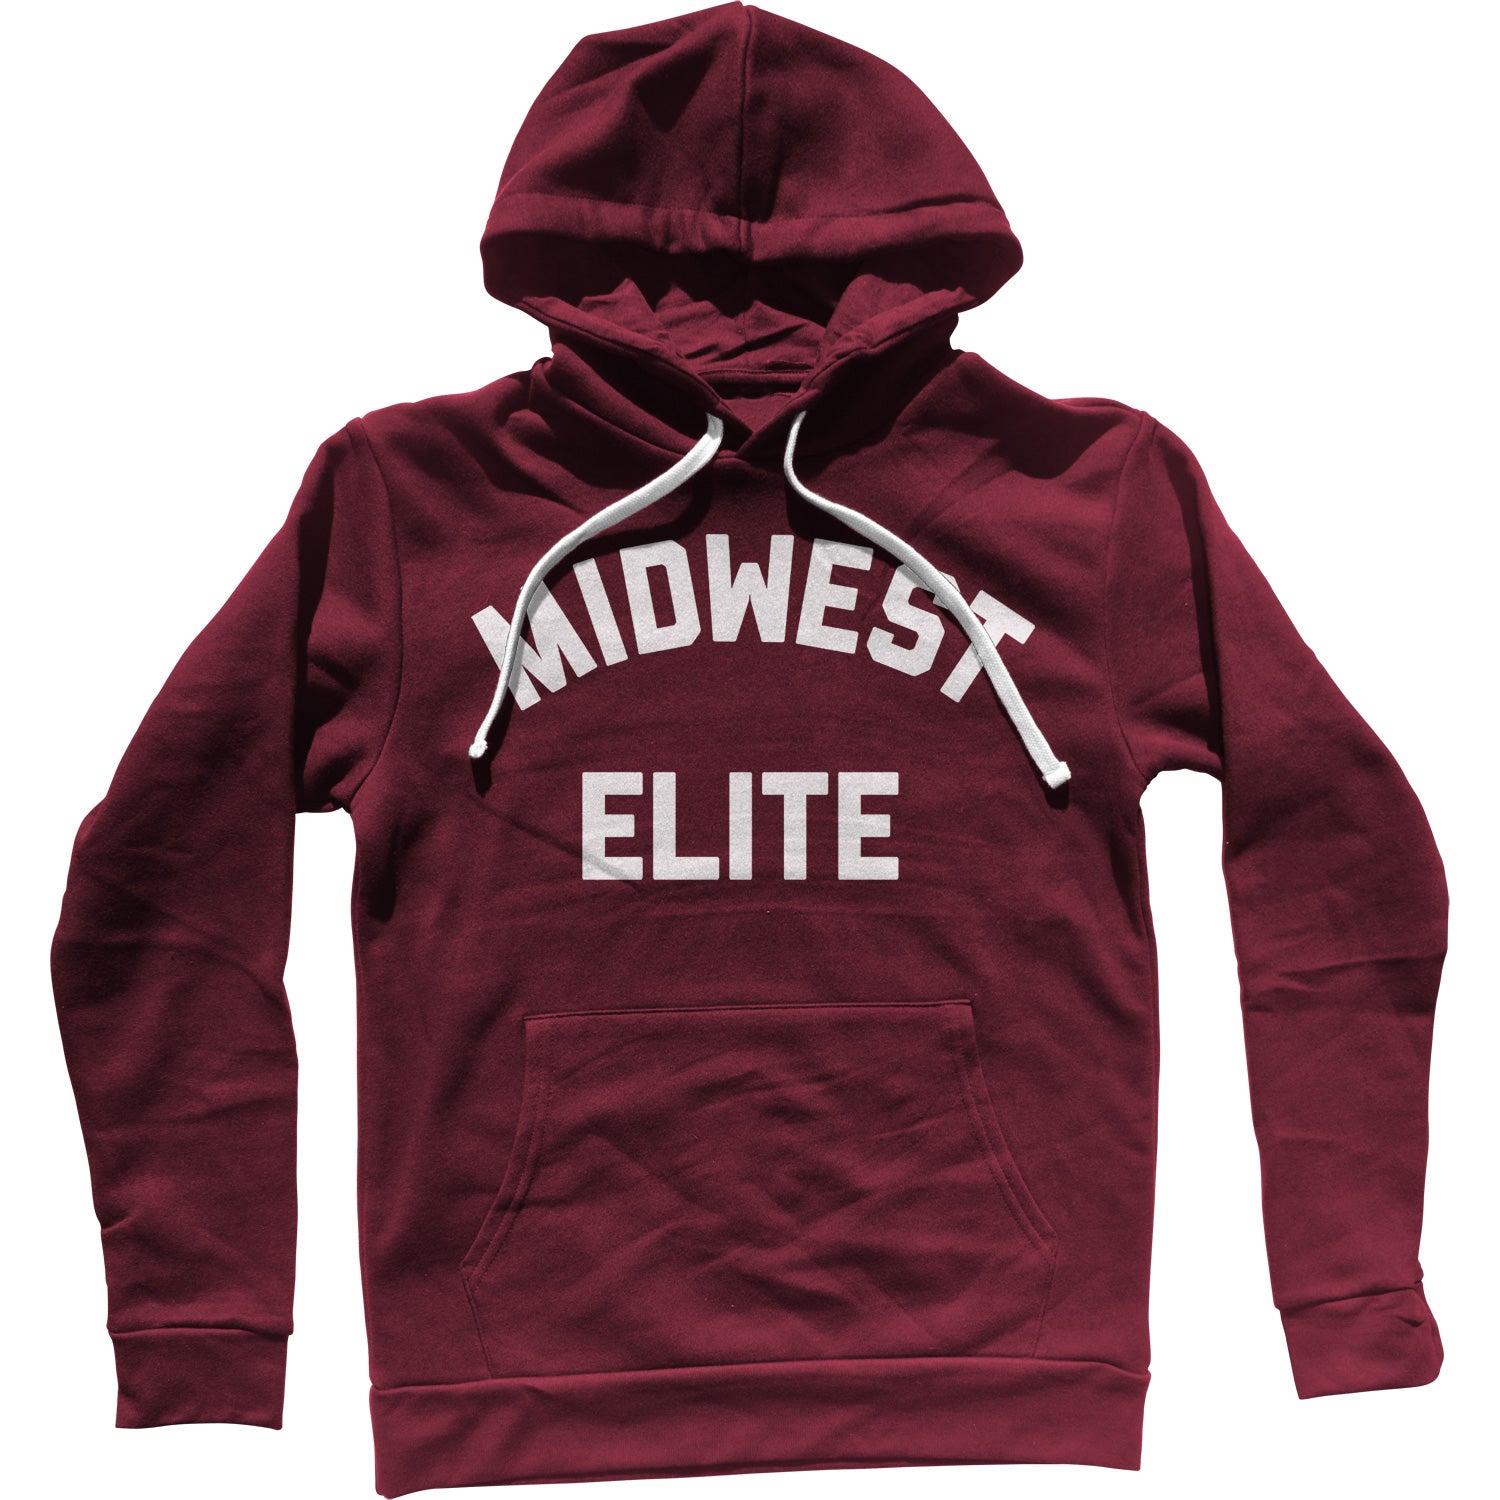 Midwest Elite Unisex Hoodie